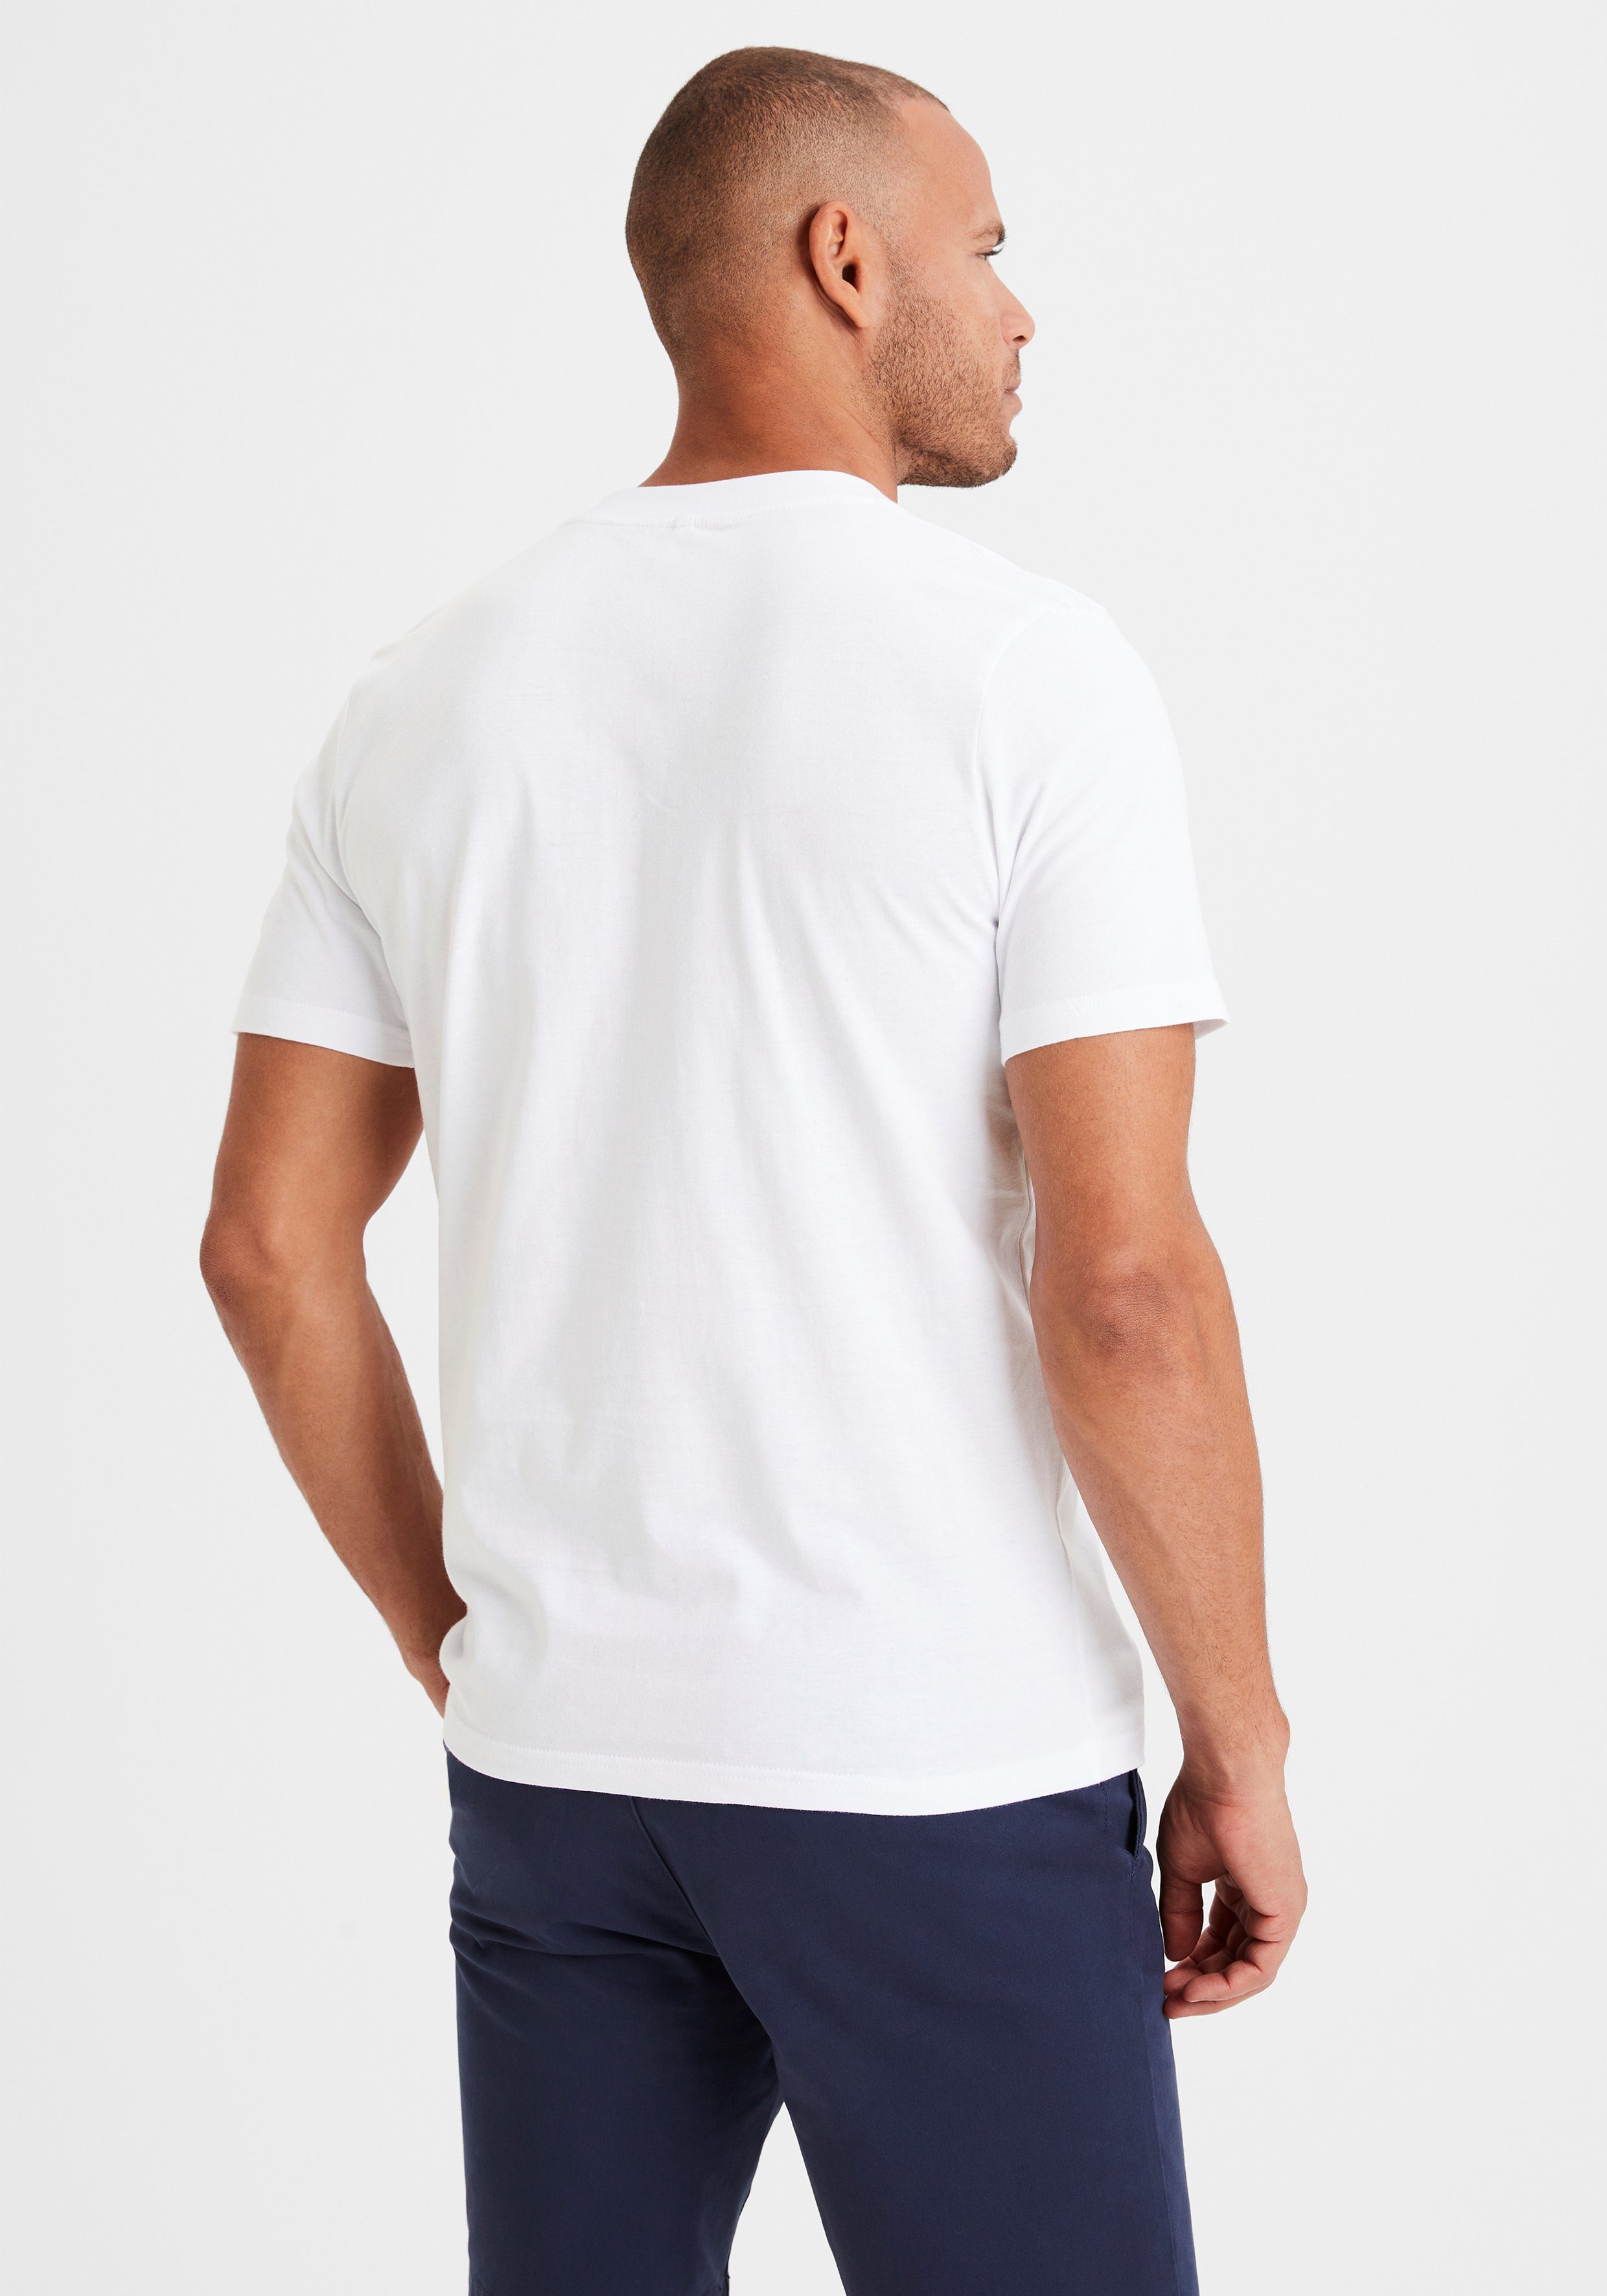 in blau / V-Shirt klassischer Form KangaROOS weiß Must-Have (2er-Pack) ein